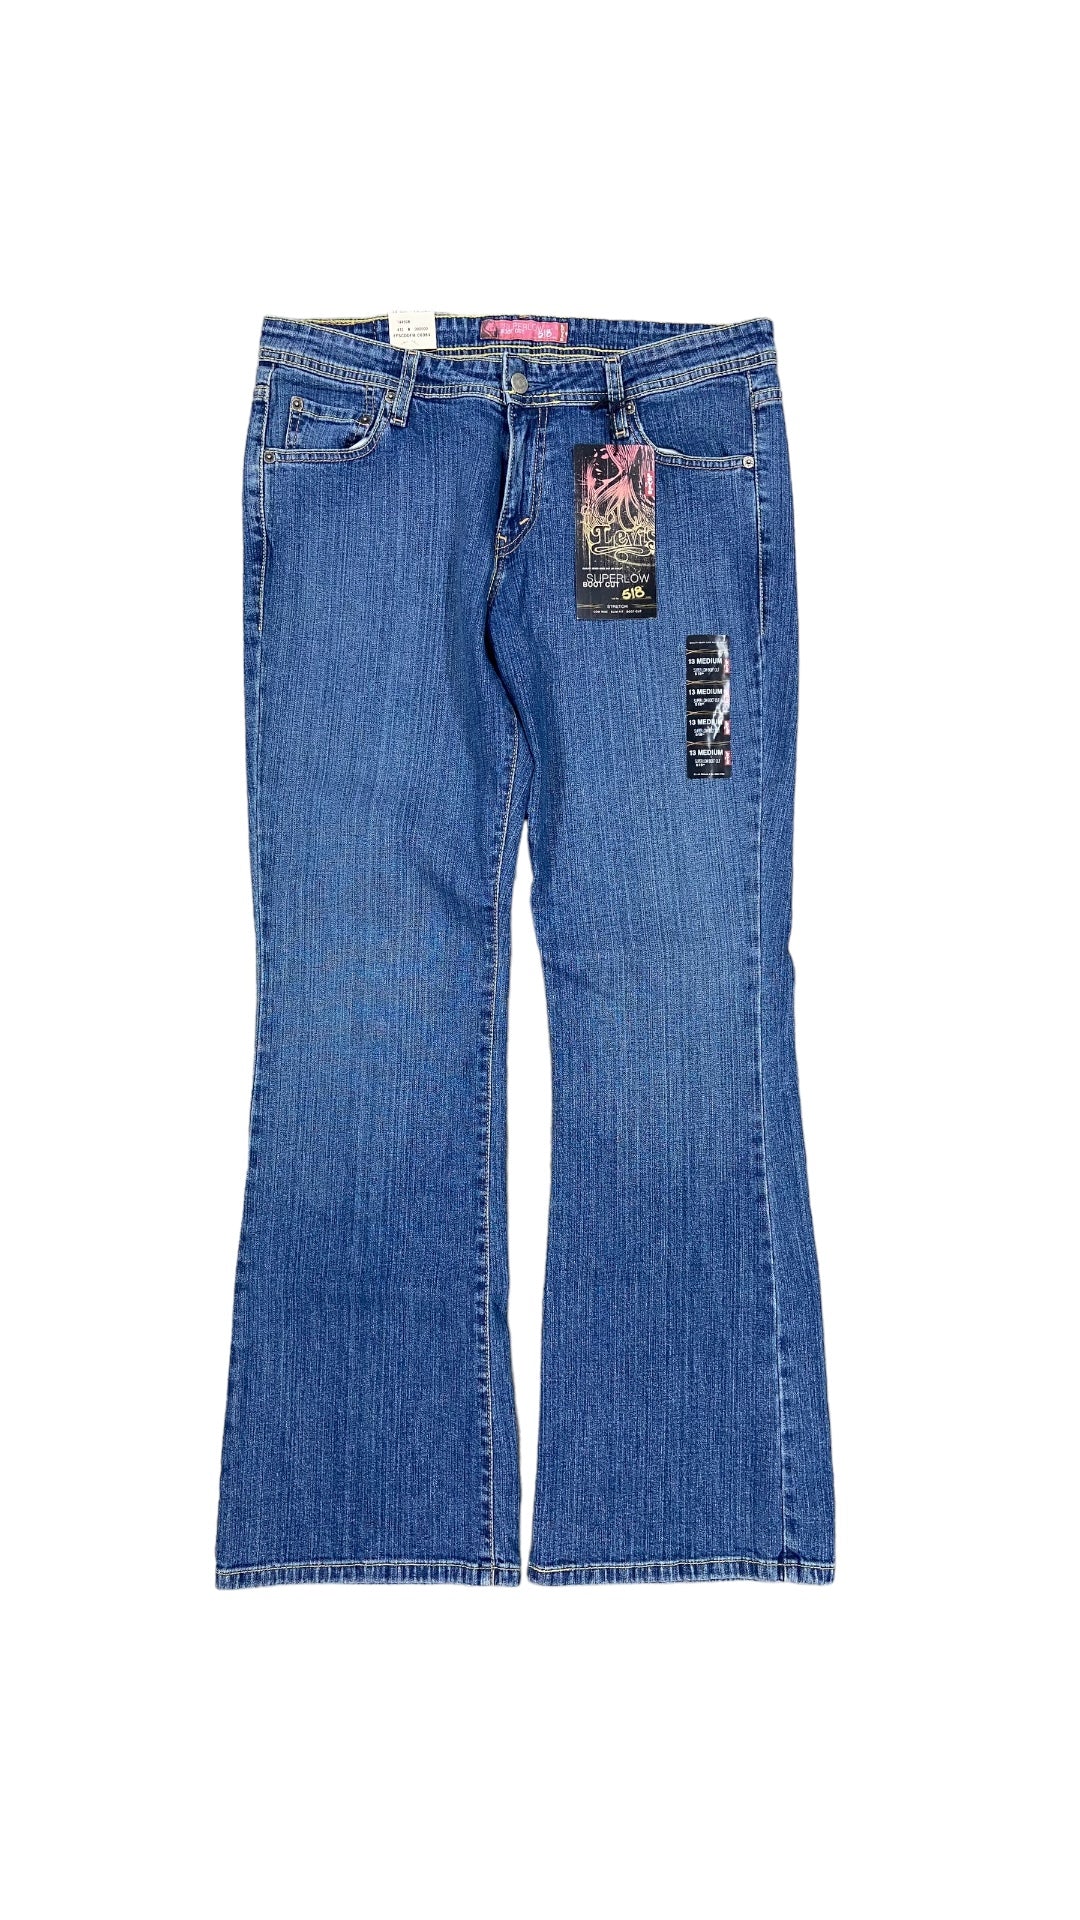 VTG Levi's Super Low Boot Cut Jeans Sz 34x32